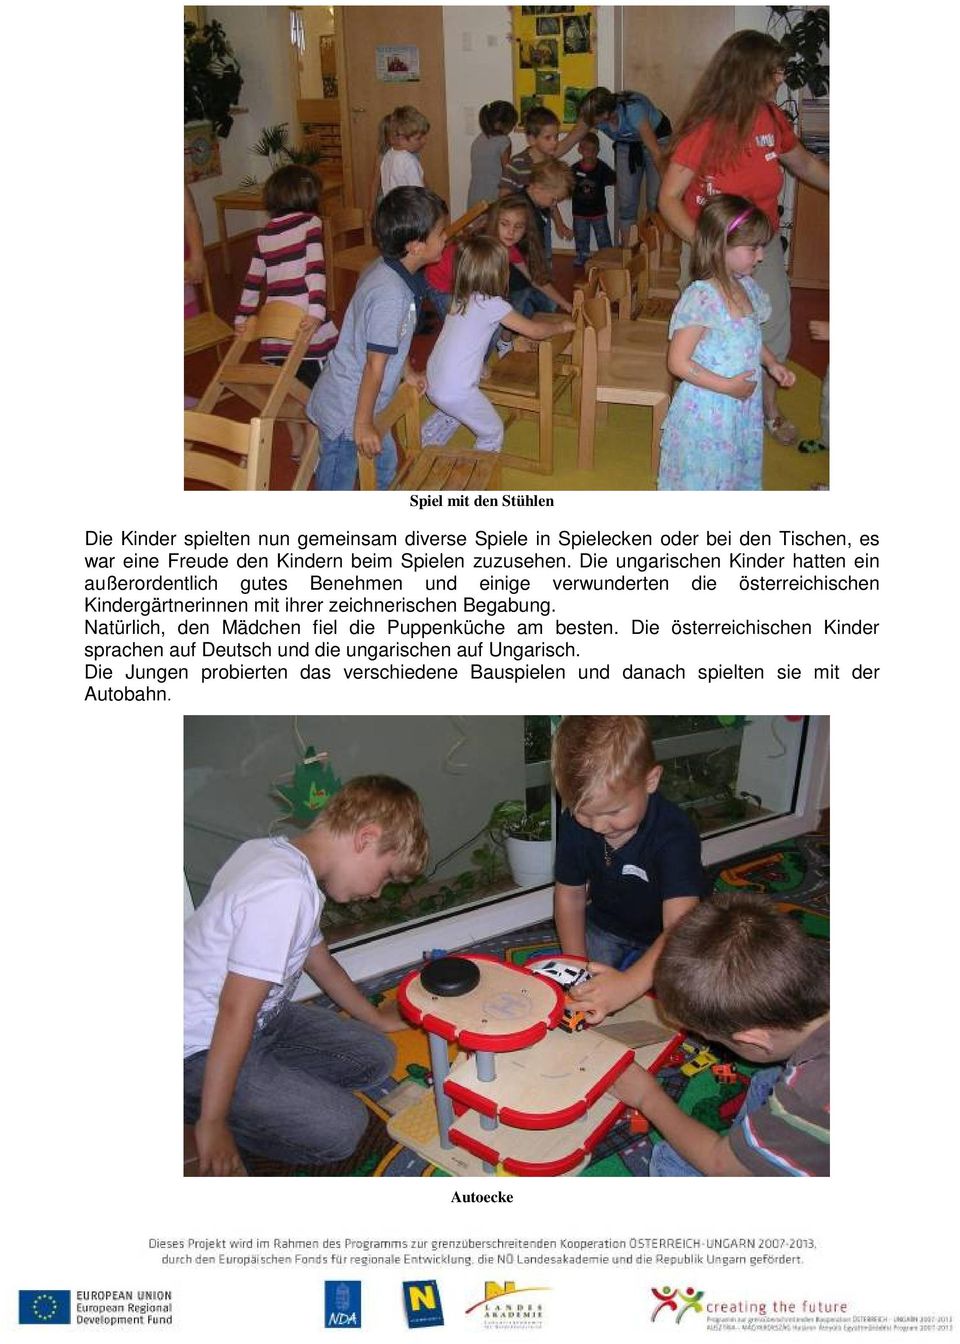 Die ungarischen Kinder hatten ein außerordentlich gutes Benehmen und einige verwunderten die österreichischen Kindergärtnerinnen mit ihrer